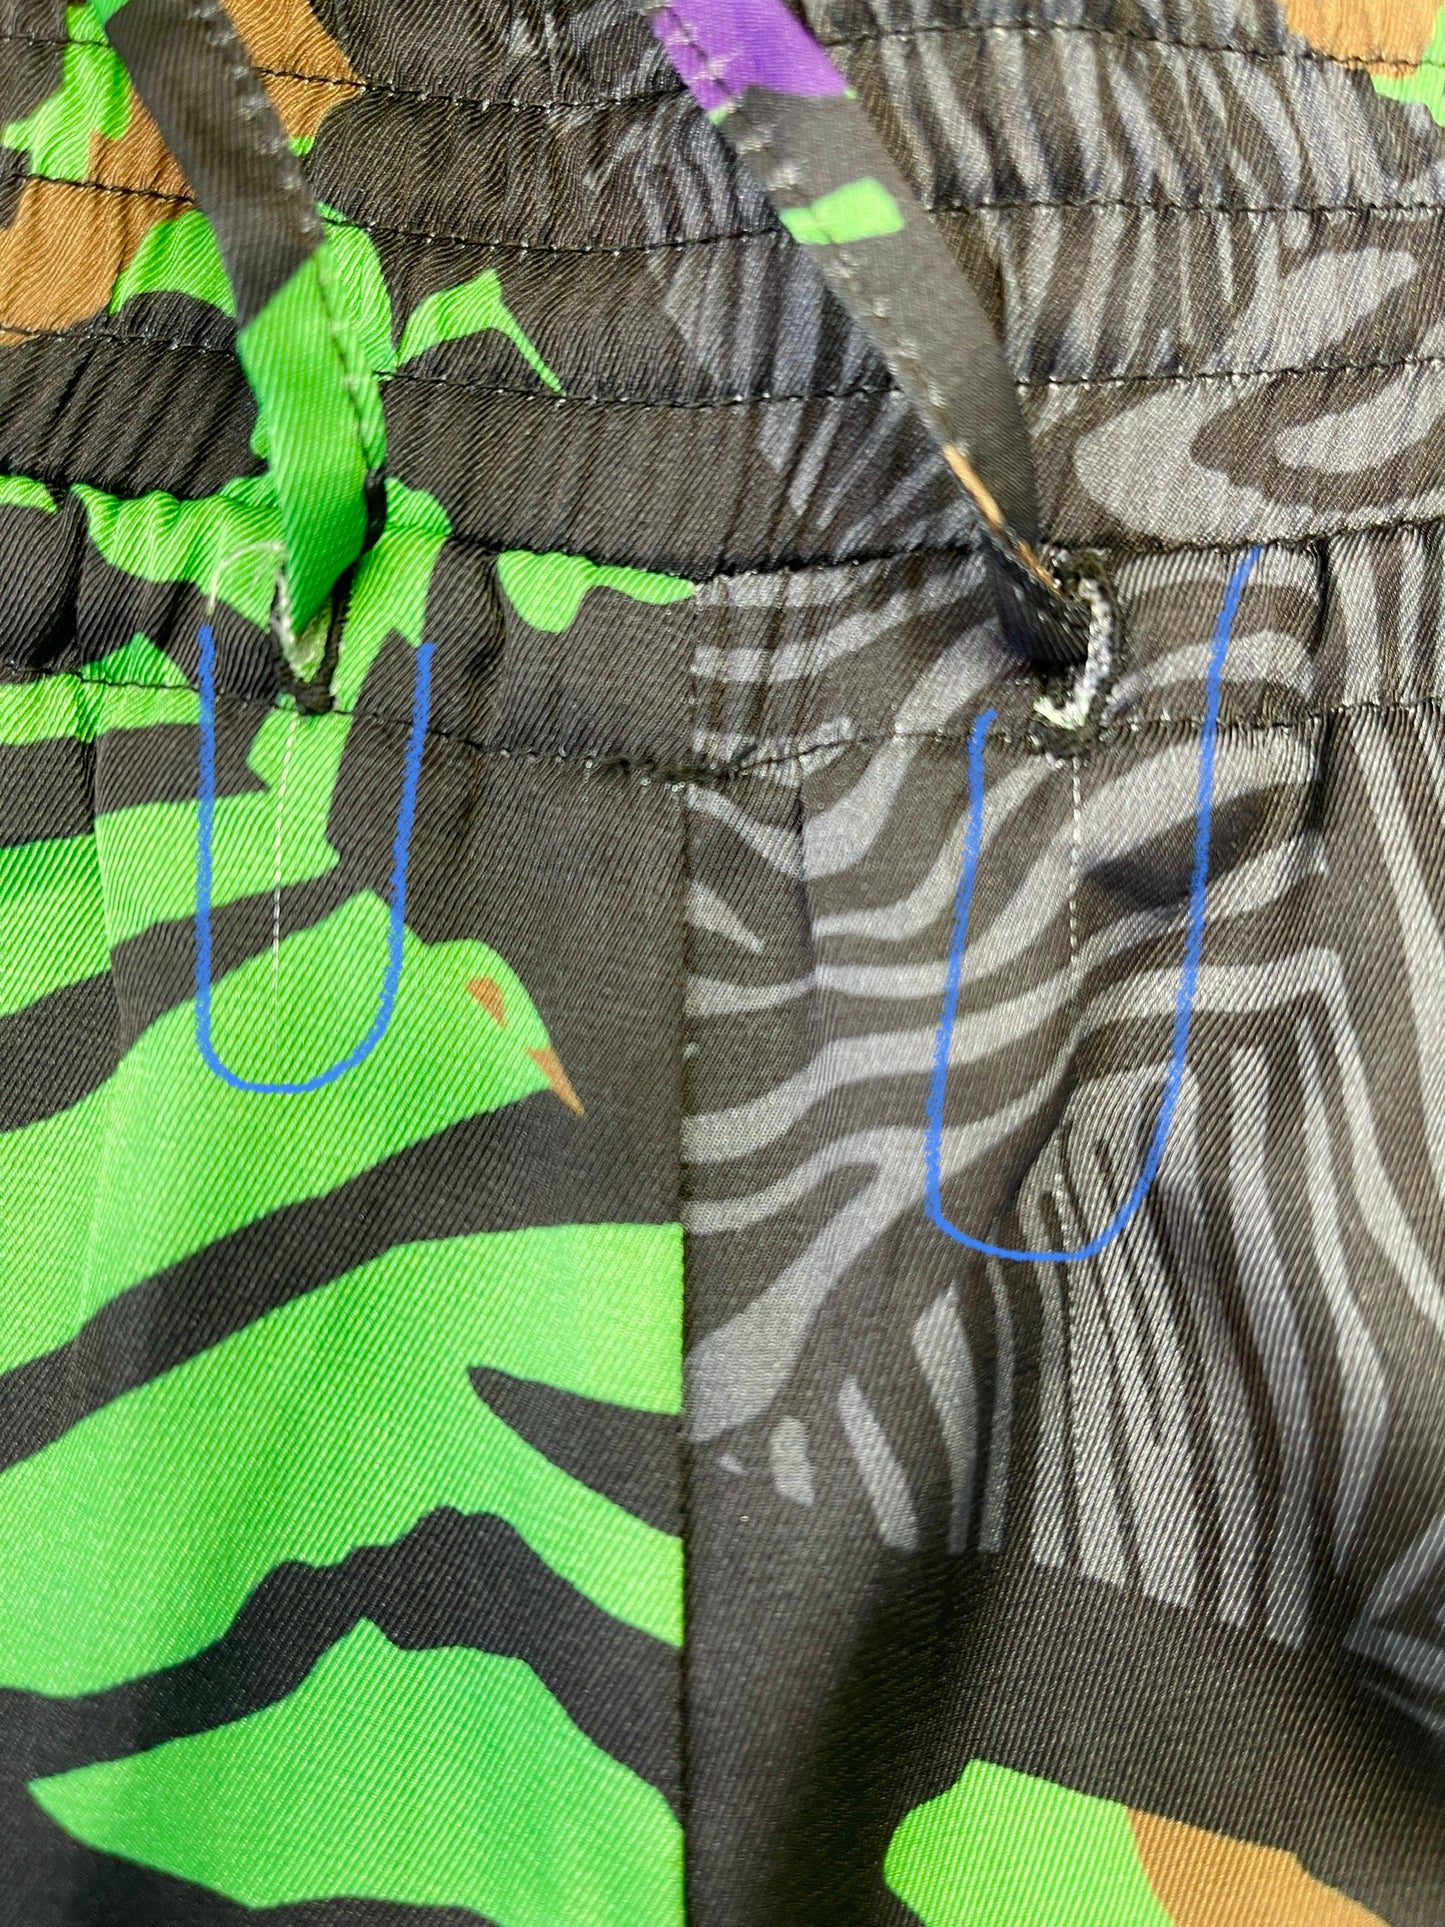 Pantalon en satin imprimé zèbre et léopard vert et mauve (XXS)